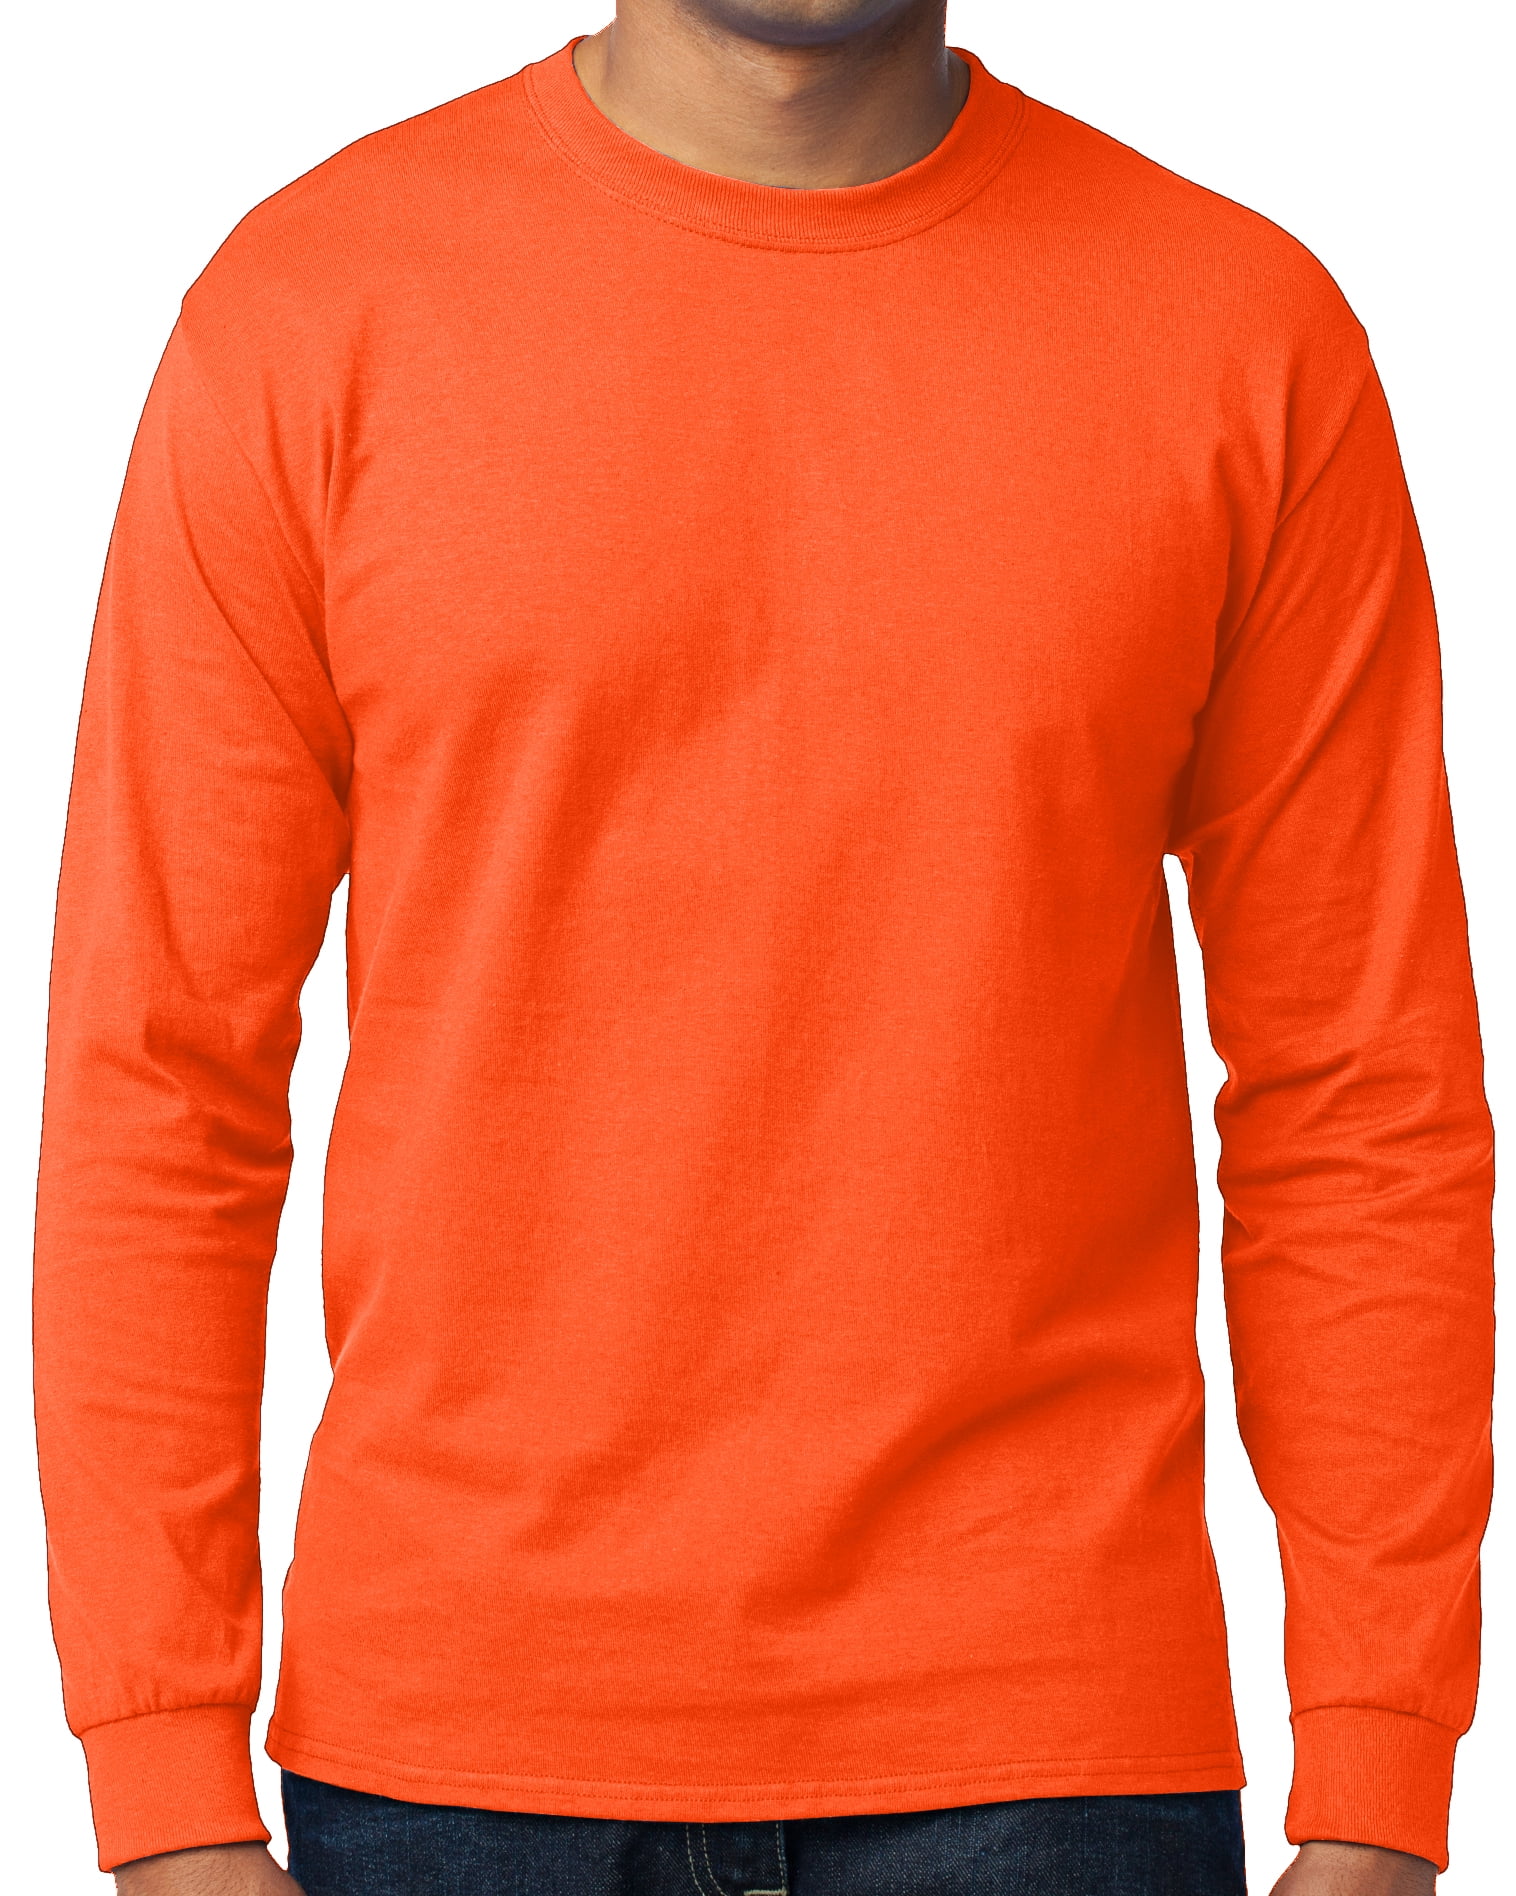 cool orange t shirt